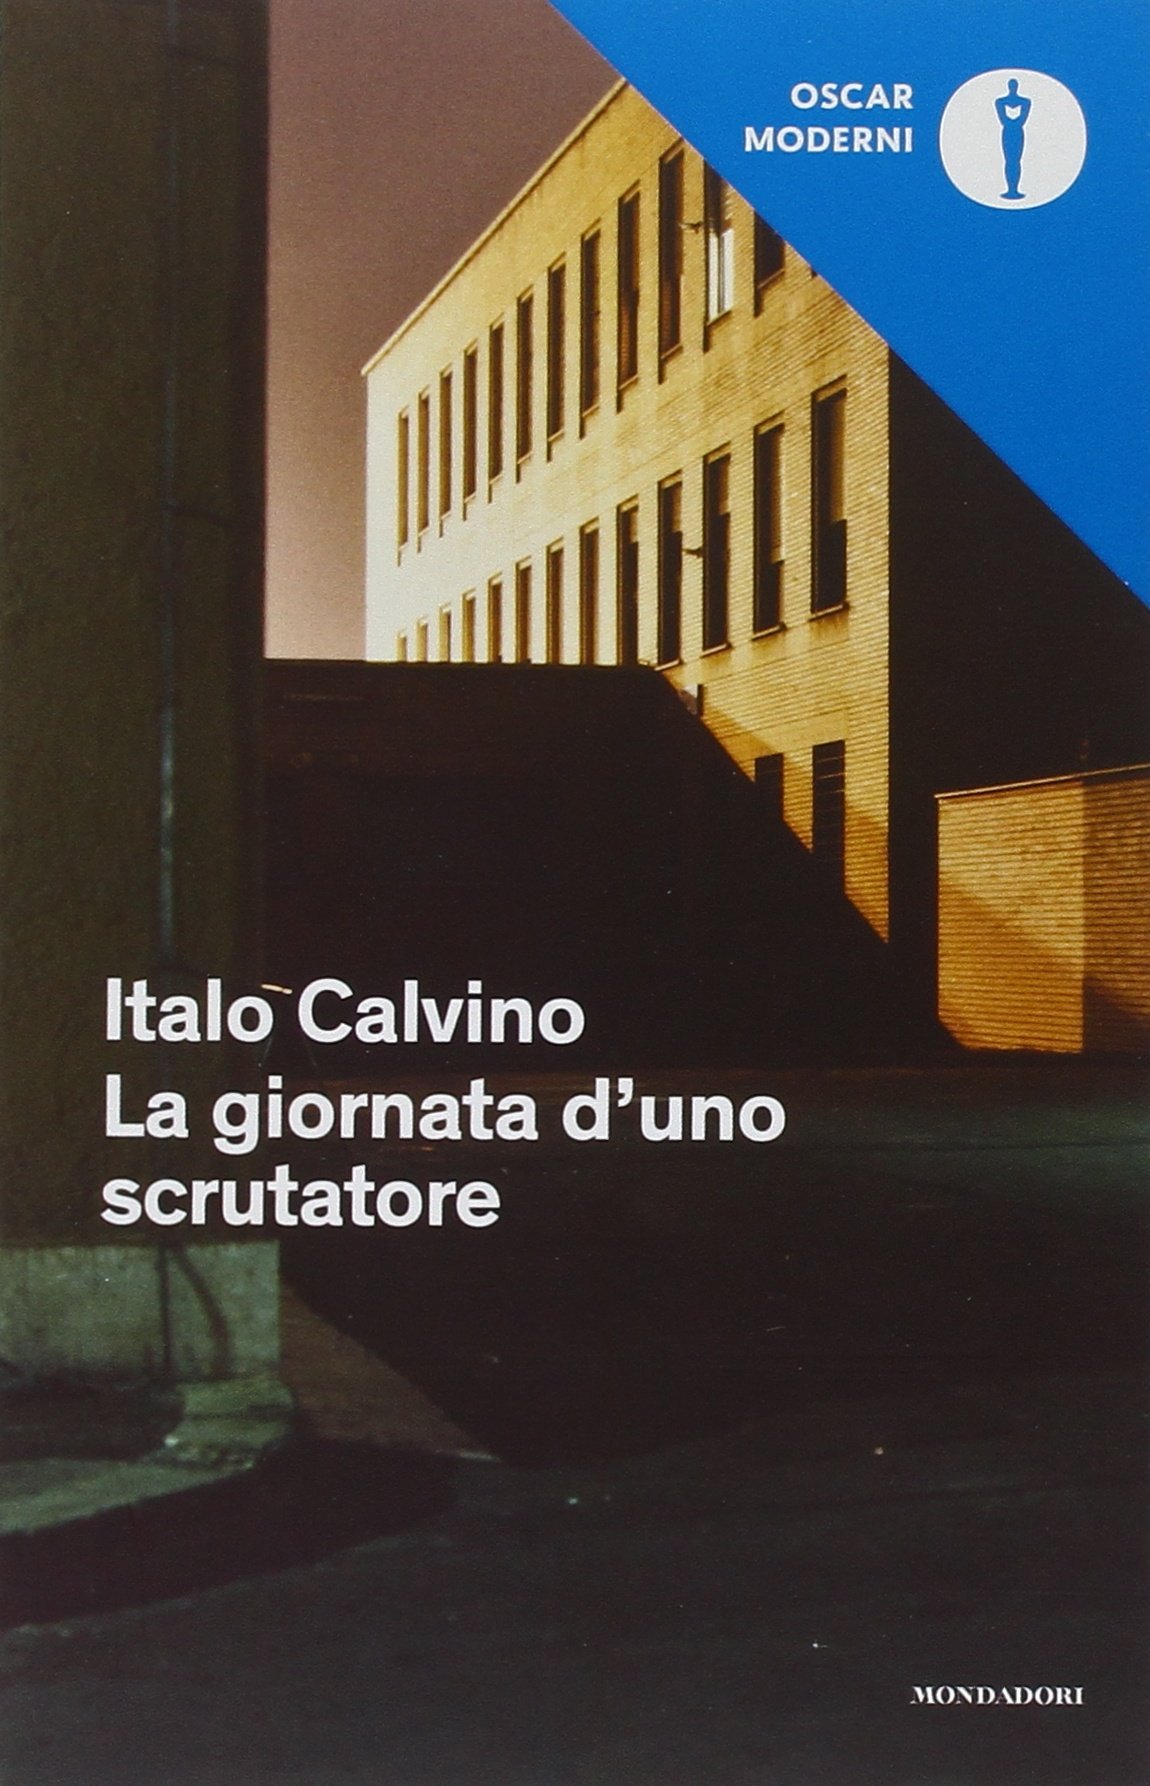 La giornata di uno scrutatore (Italian language, 1963)